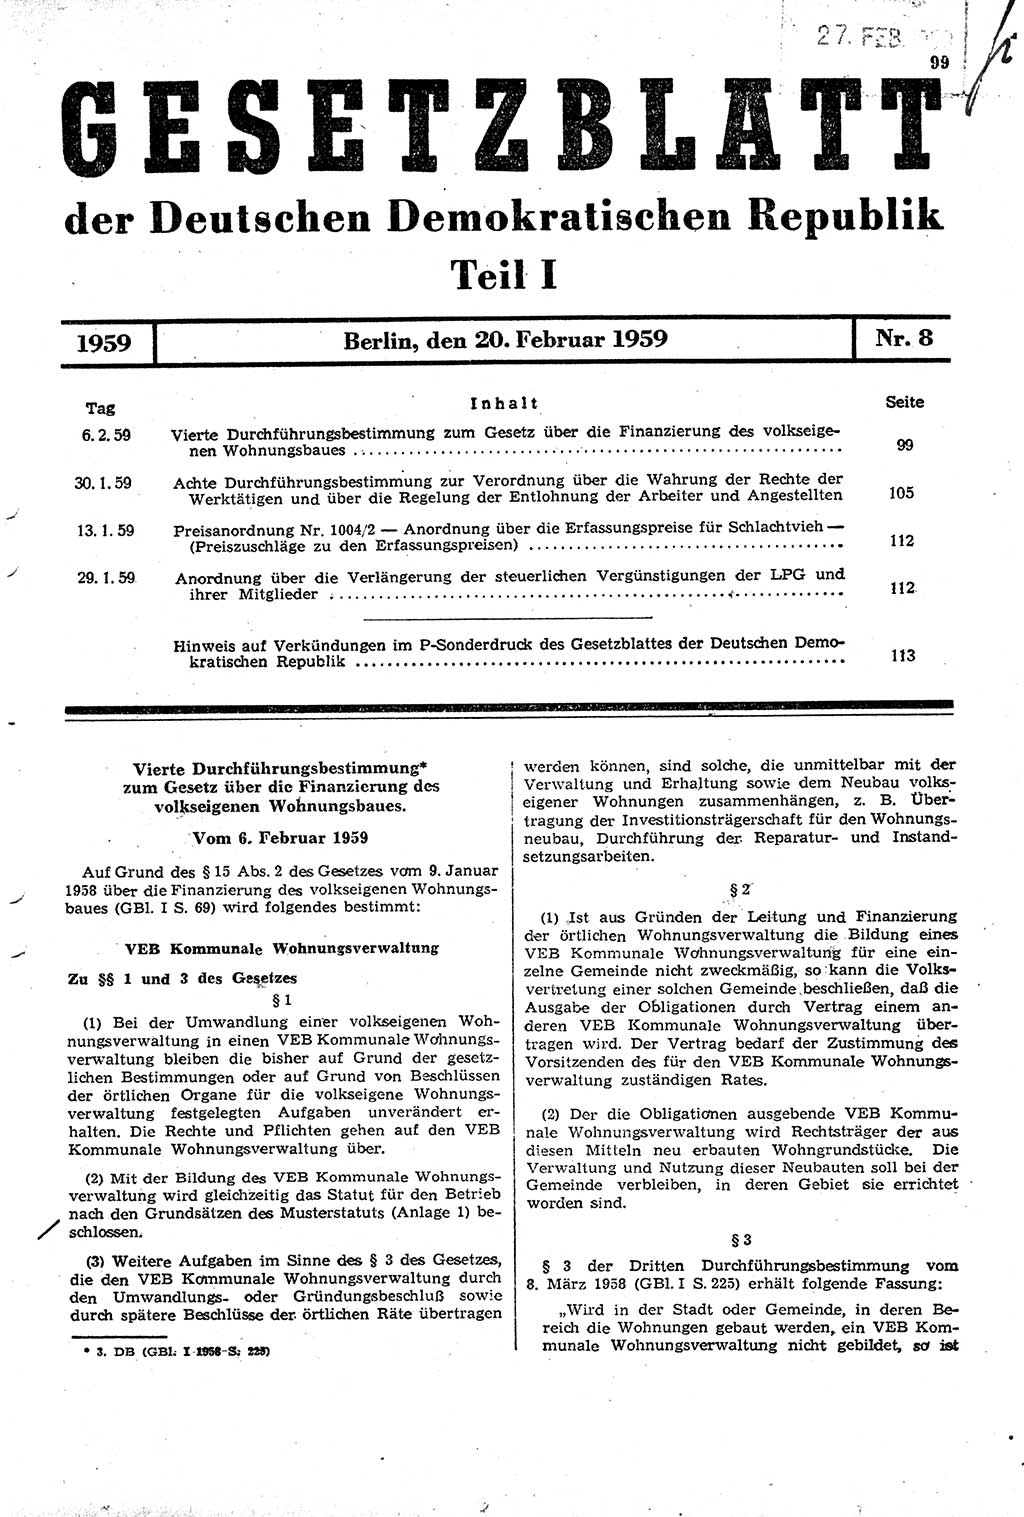 Gesetzblatt (GBl.) der Deutschen Demokratischen Republik (DDR) Teil Ⅰ 1959, Seite 99 (GBl. DDR Ⅰ 1959, S. 99)